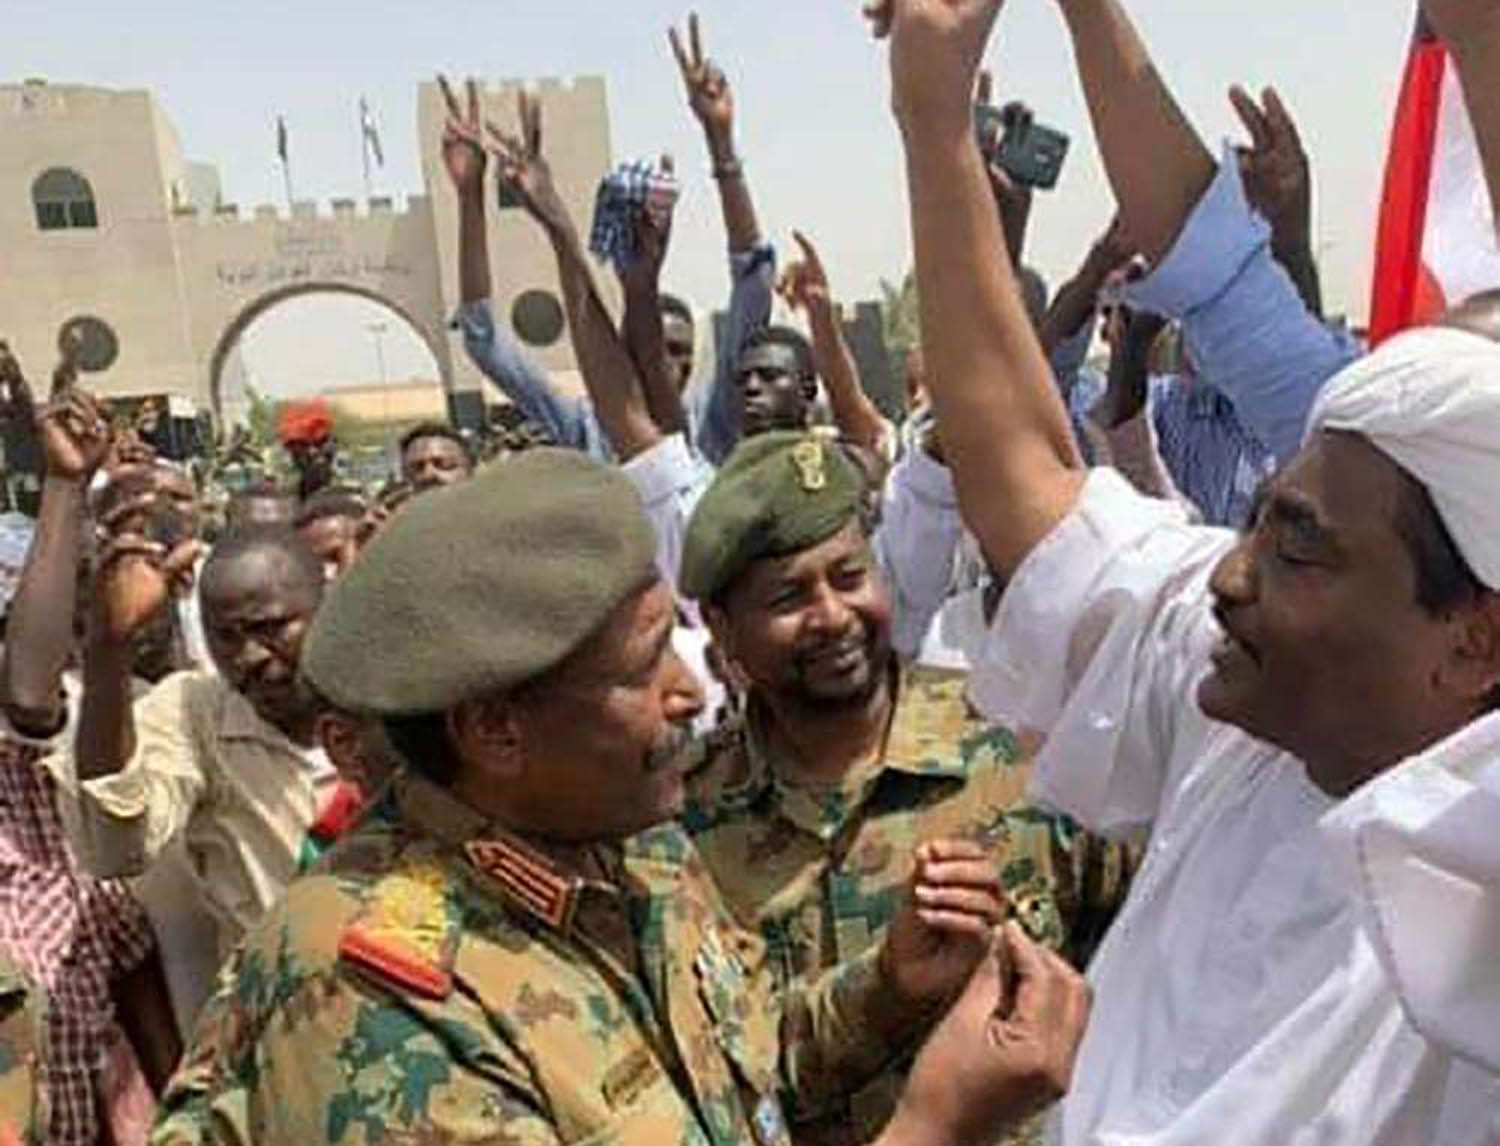 رئيس المجلس العسكري في السودان الفريق أول عبدالفتاح برهان عبدالرحمن يتحدث إلى أحد المتظاهرين في الخرطوم